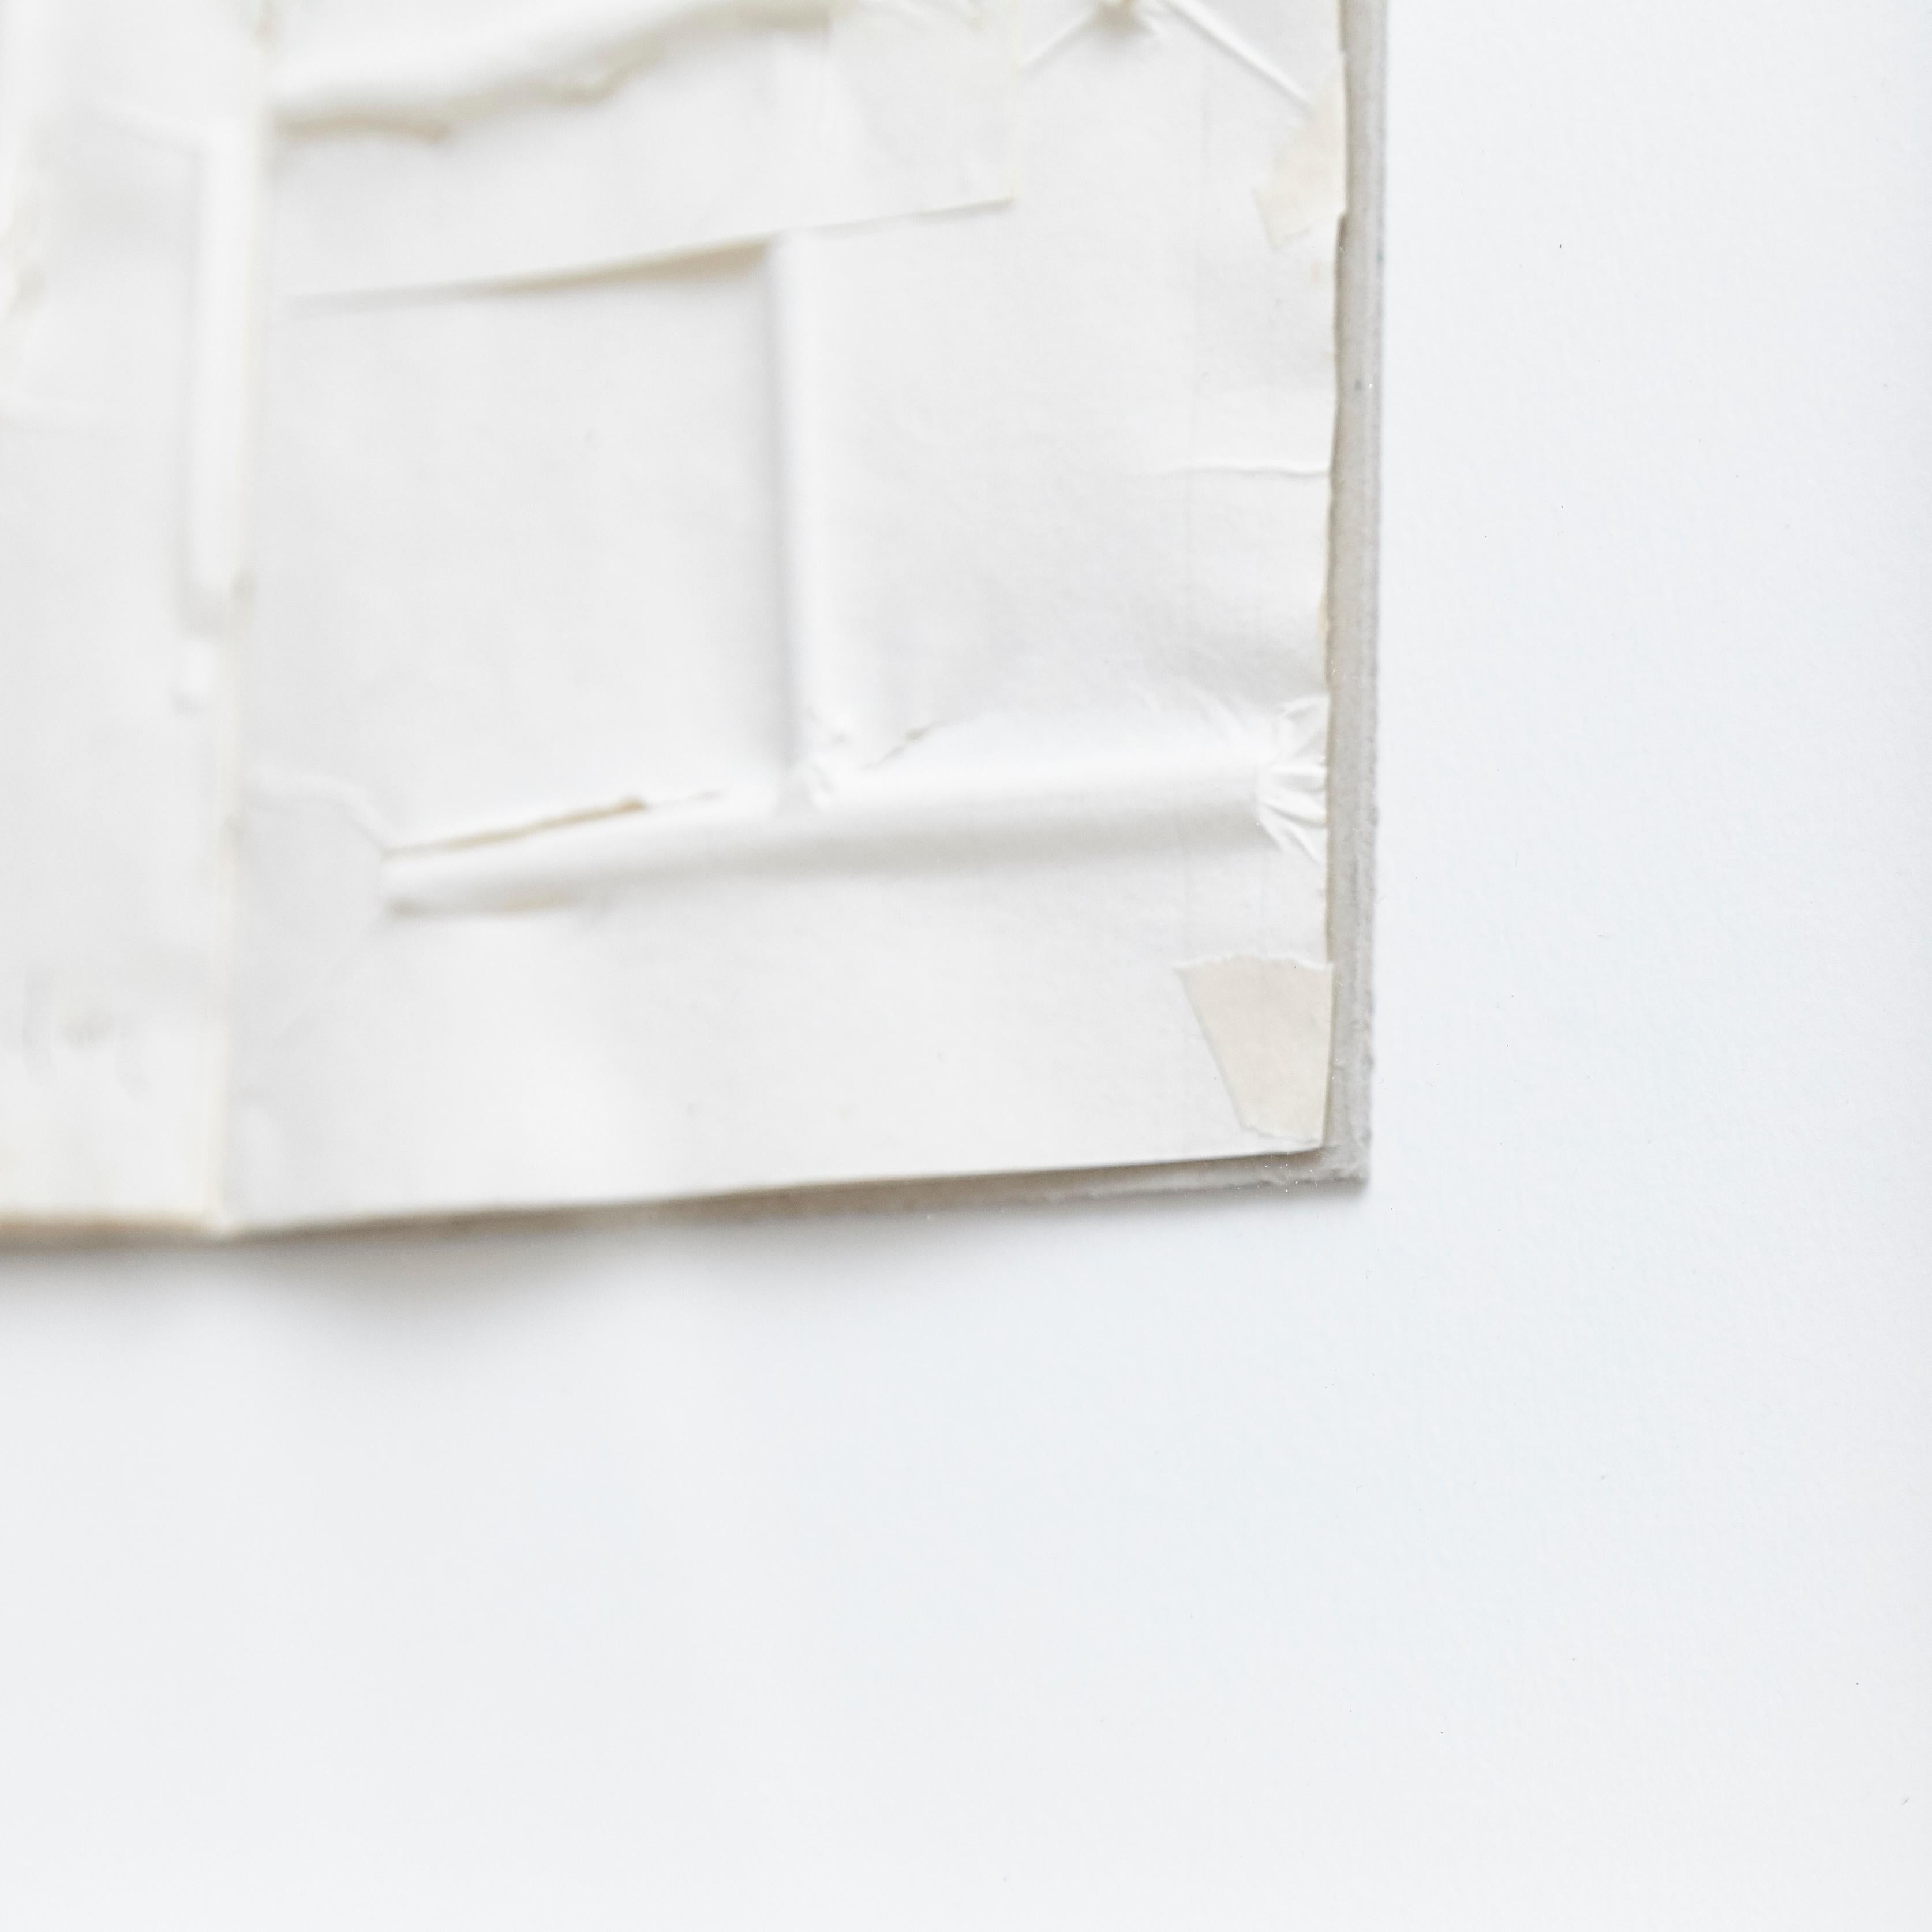 Jordi Alcaraz Contemporary Abstract Minimalist White Artwork, 2019 3